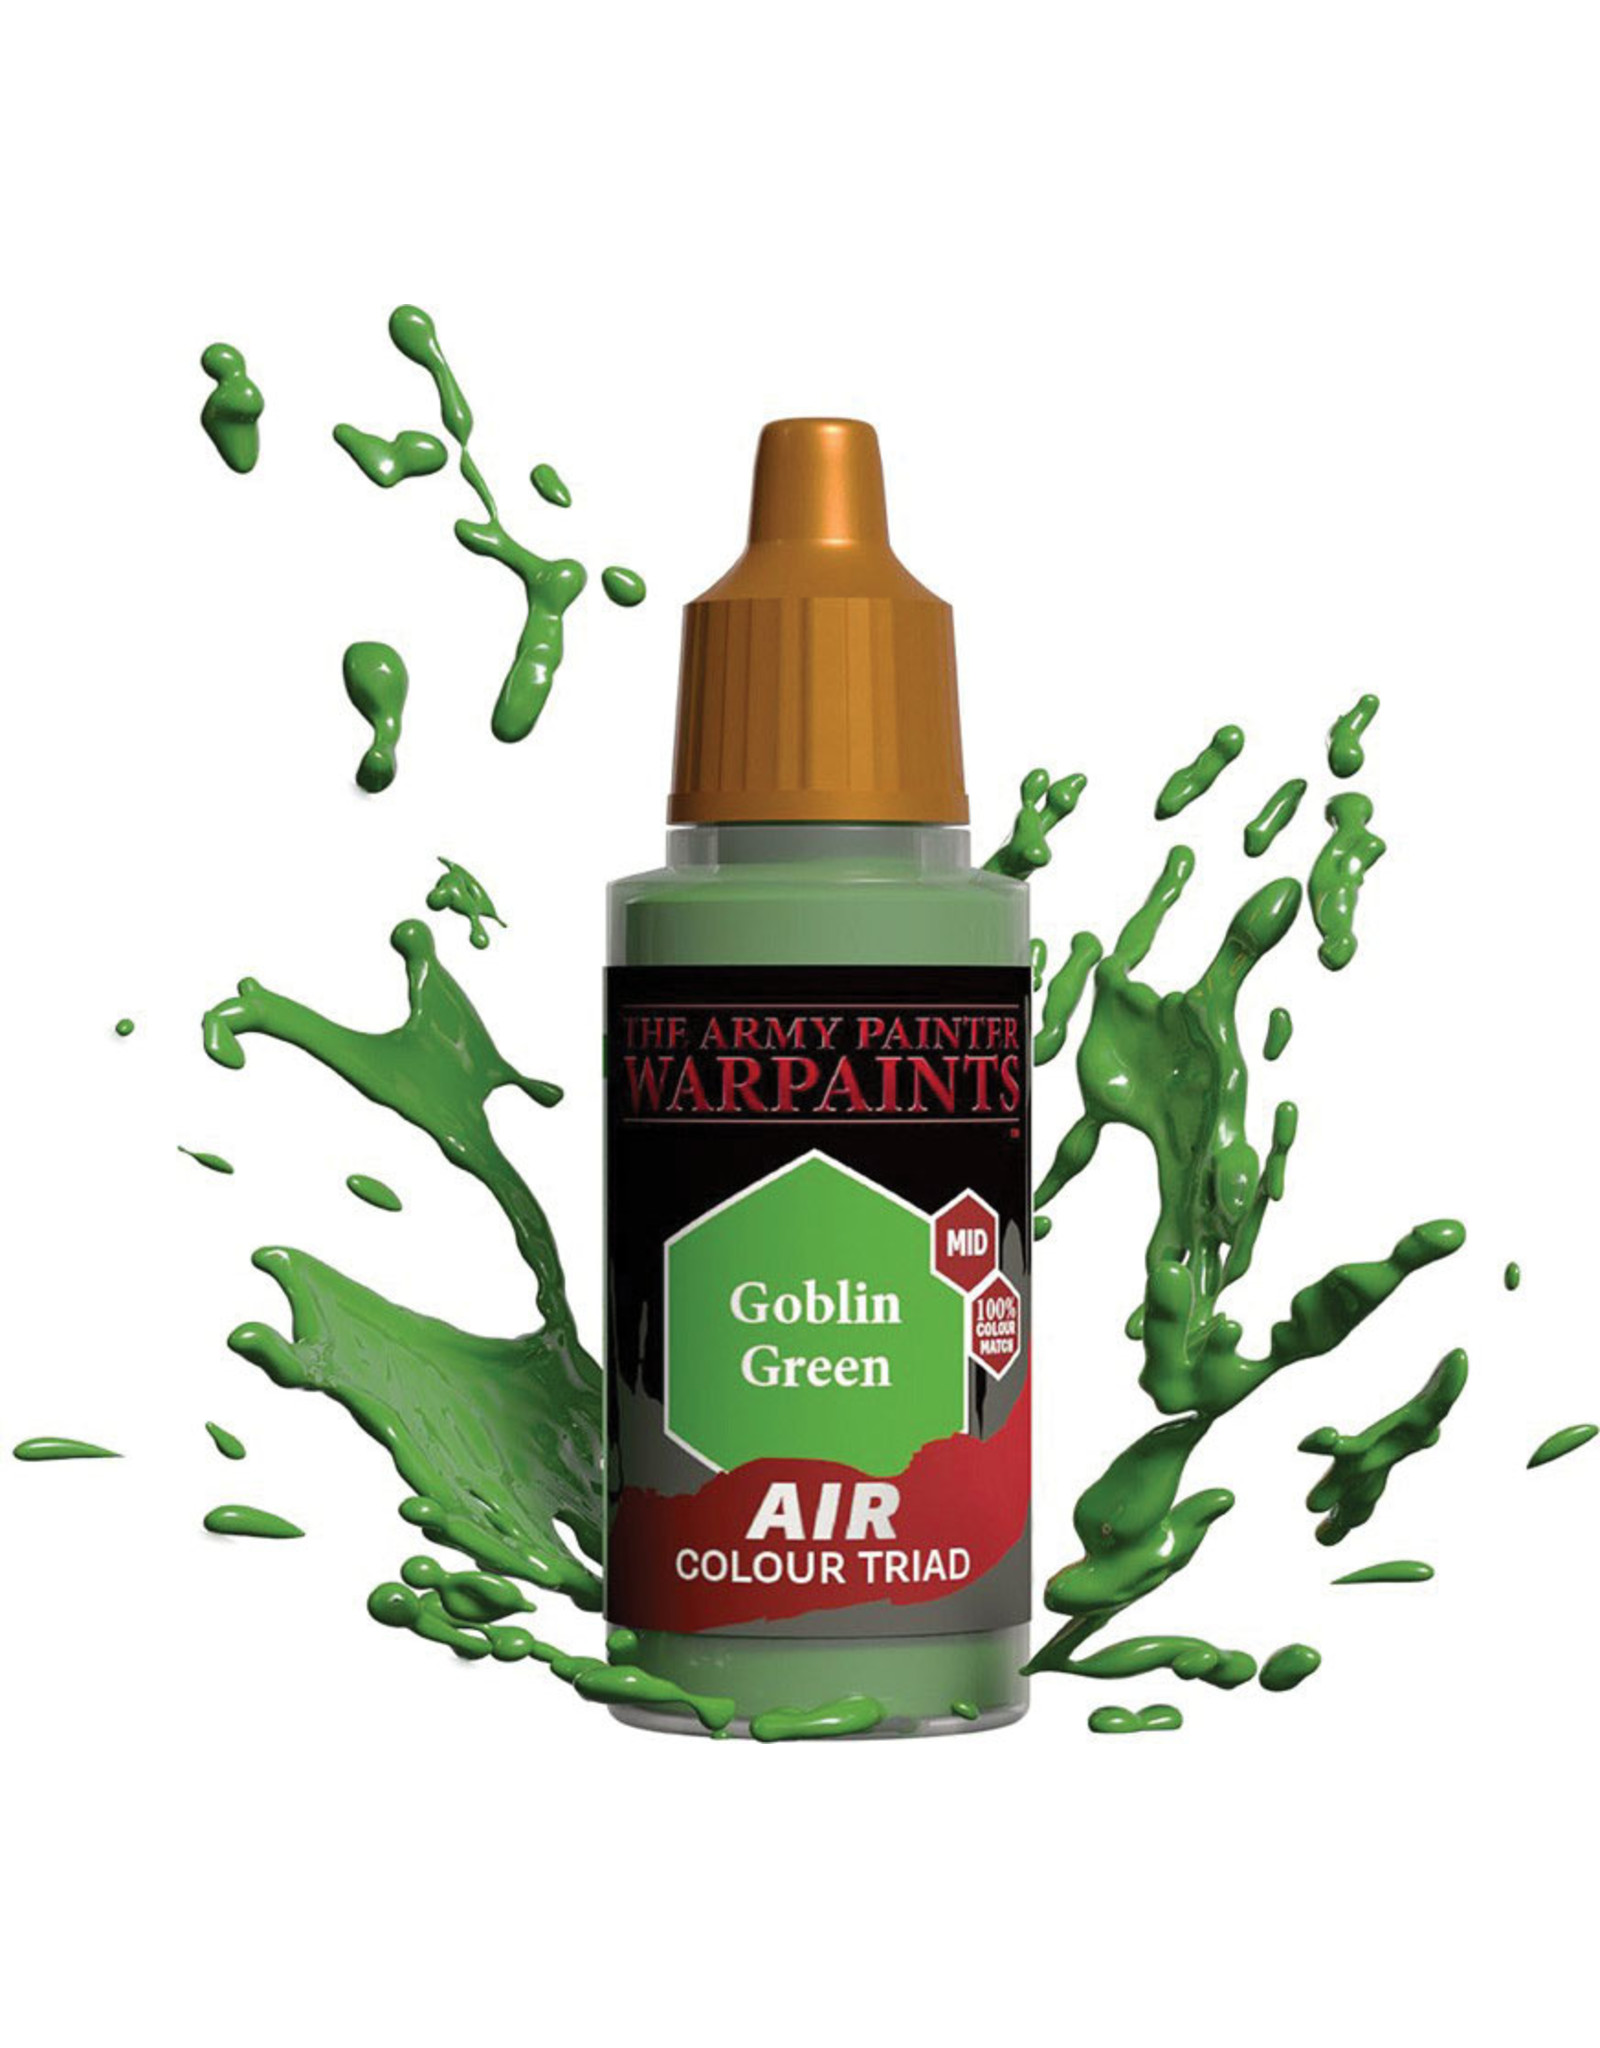 Army Painter Warpaint Air: Goblin Green, 18ml.